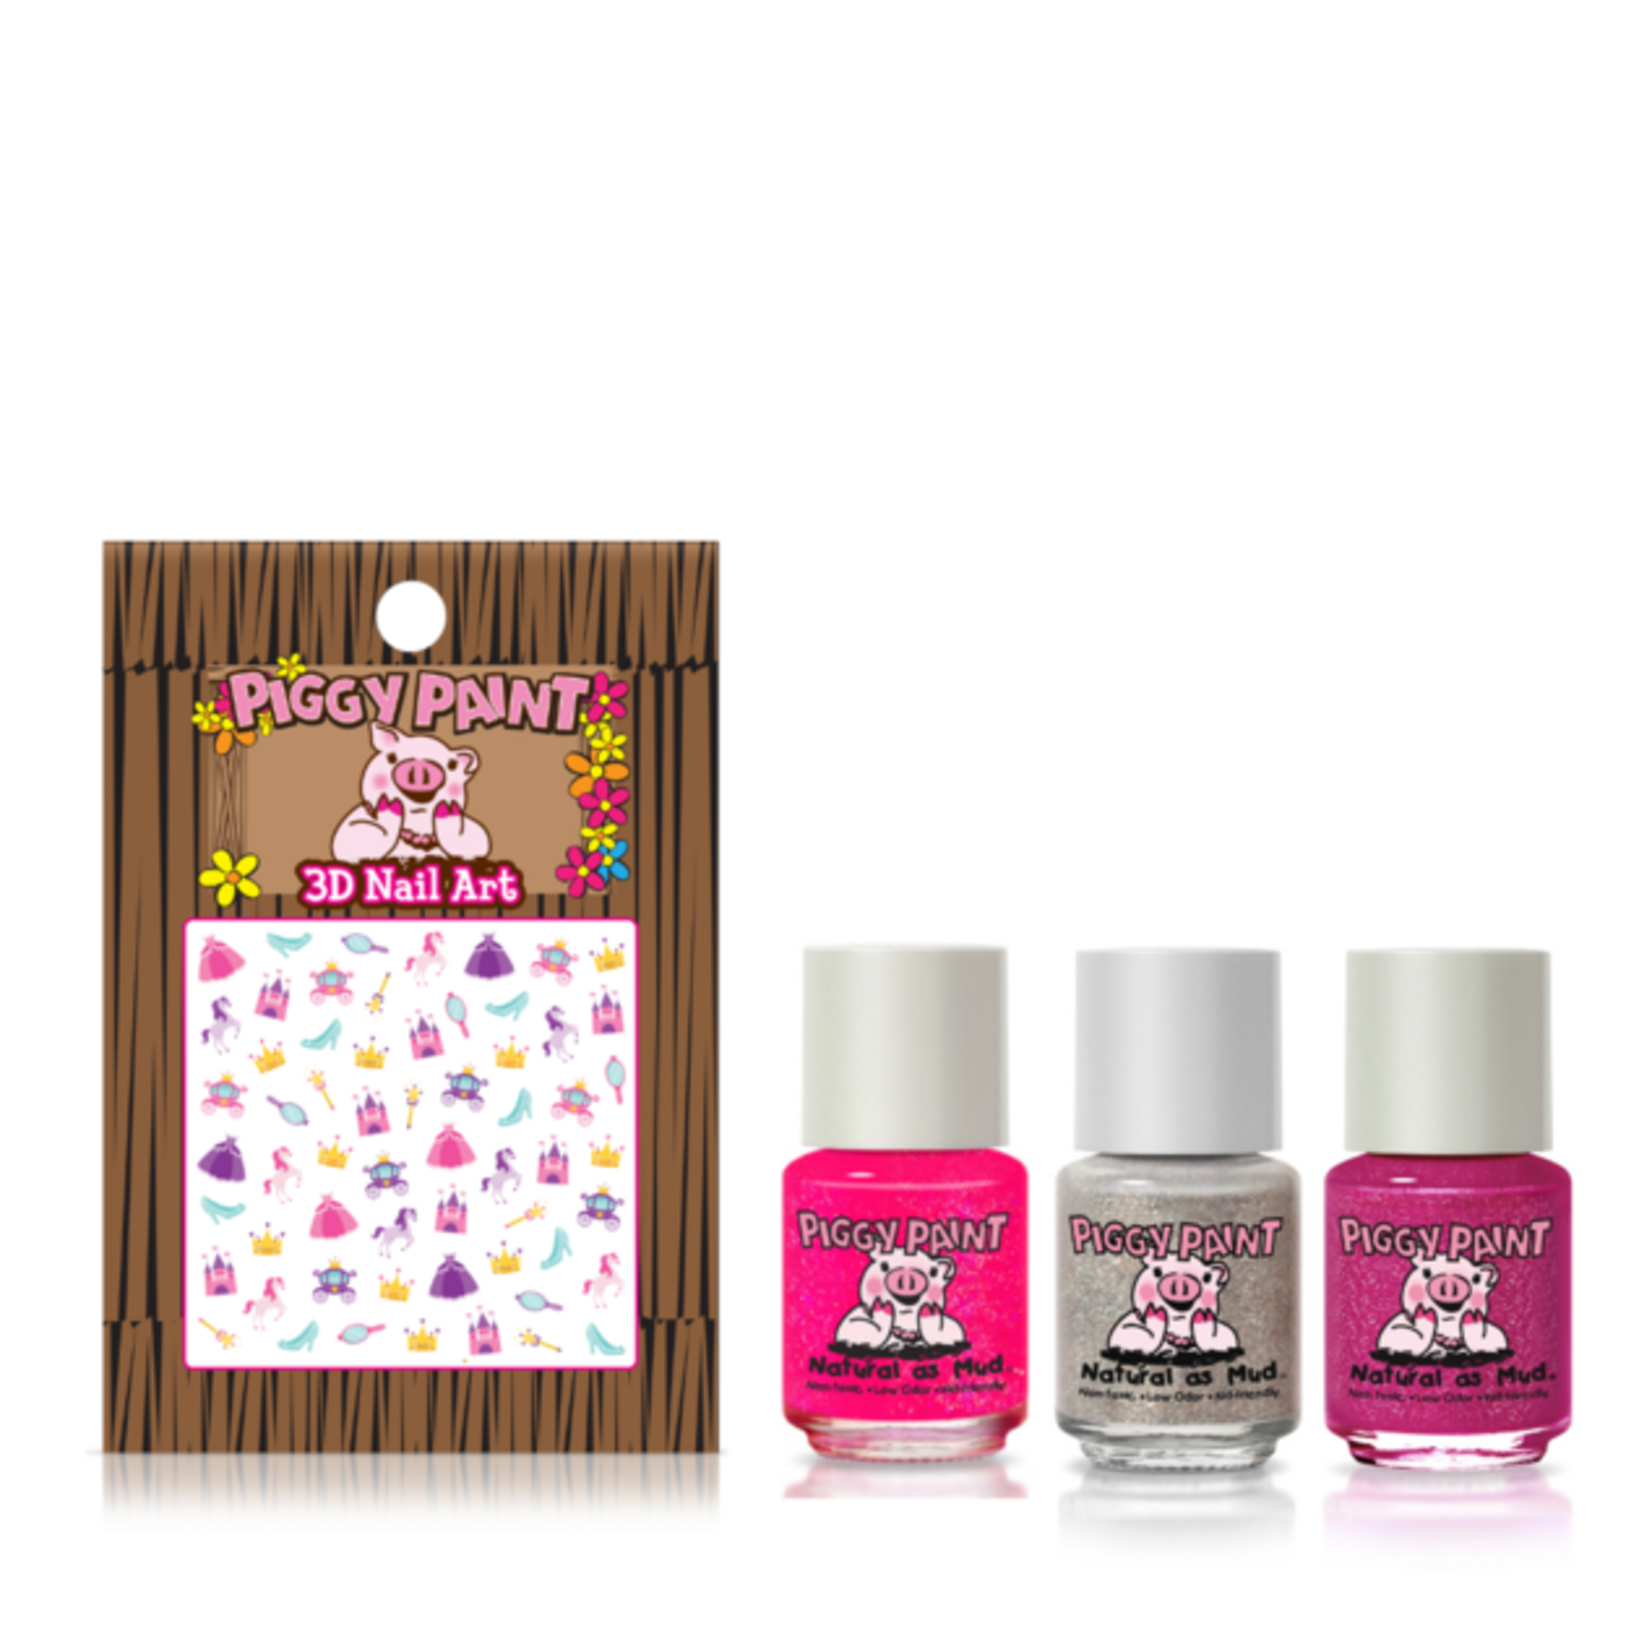 Piggy Paint Piggy Paint Sparkle, Sparkle! Gift Set 3 polish & Nail Art